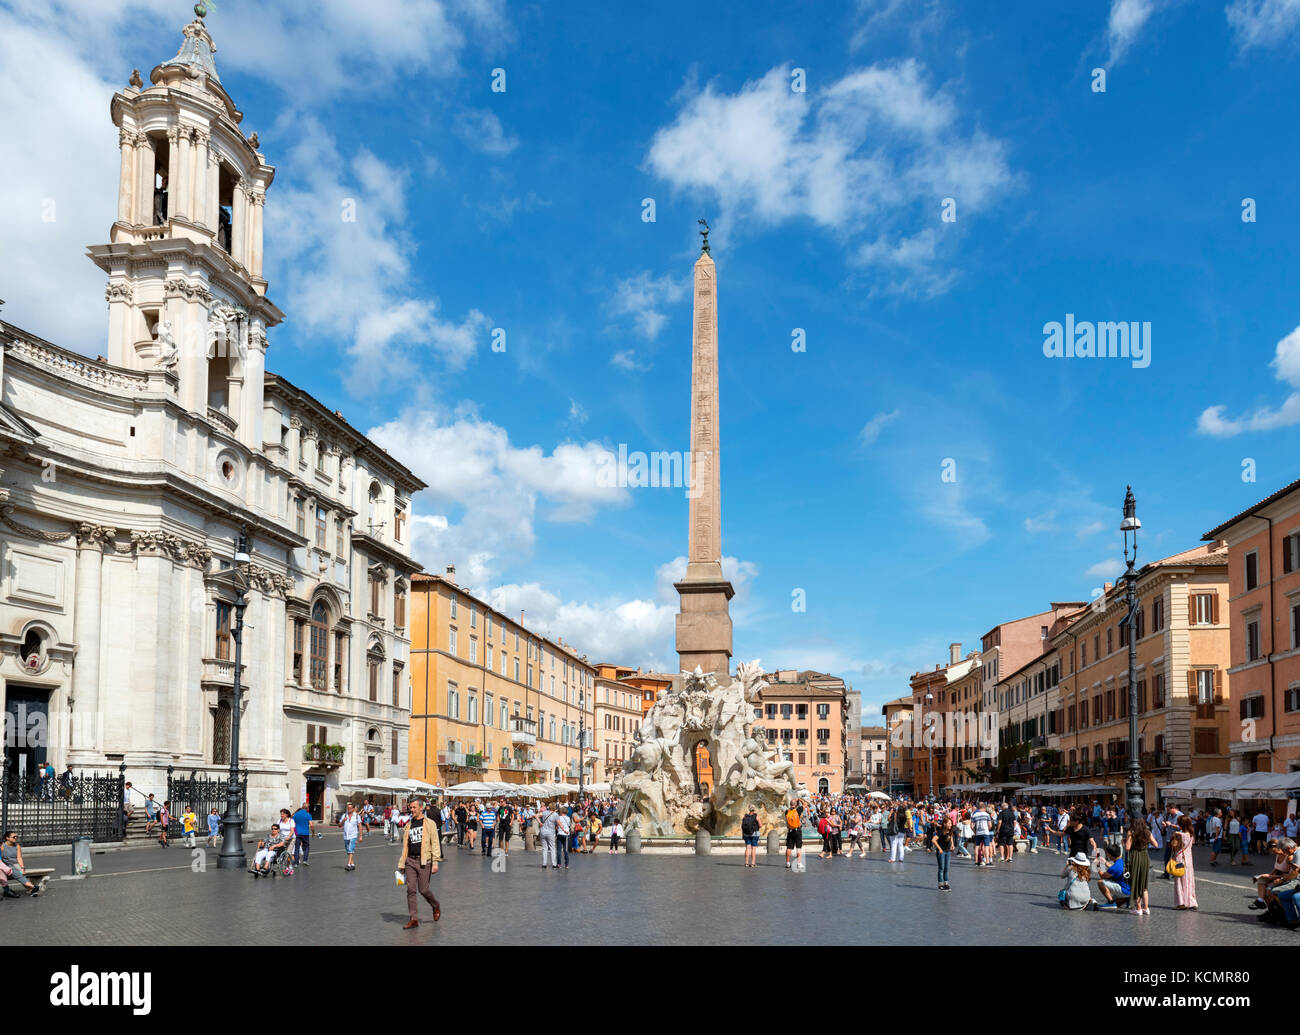 Piazza Navona looking towards the Fontana dei Quattro Fiumi, Rome, Italy Stock Photo